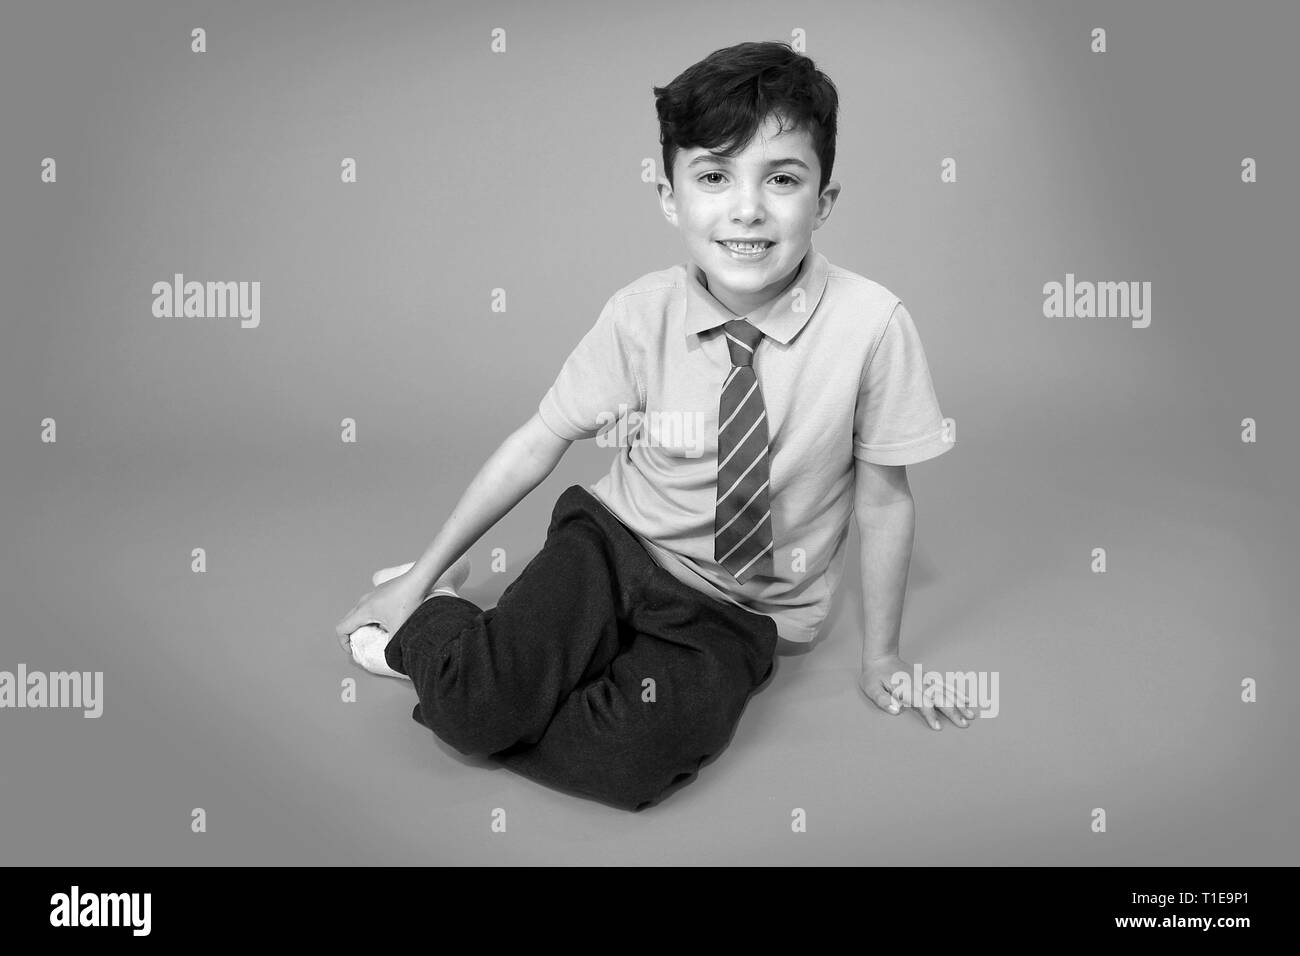 Happy Young boy in school uniform Banque D'Images